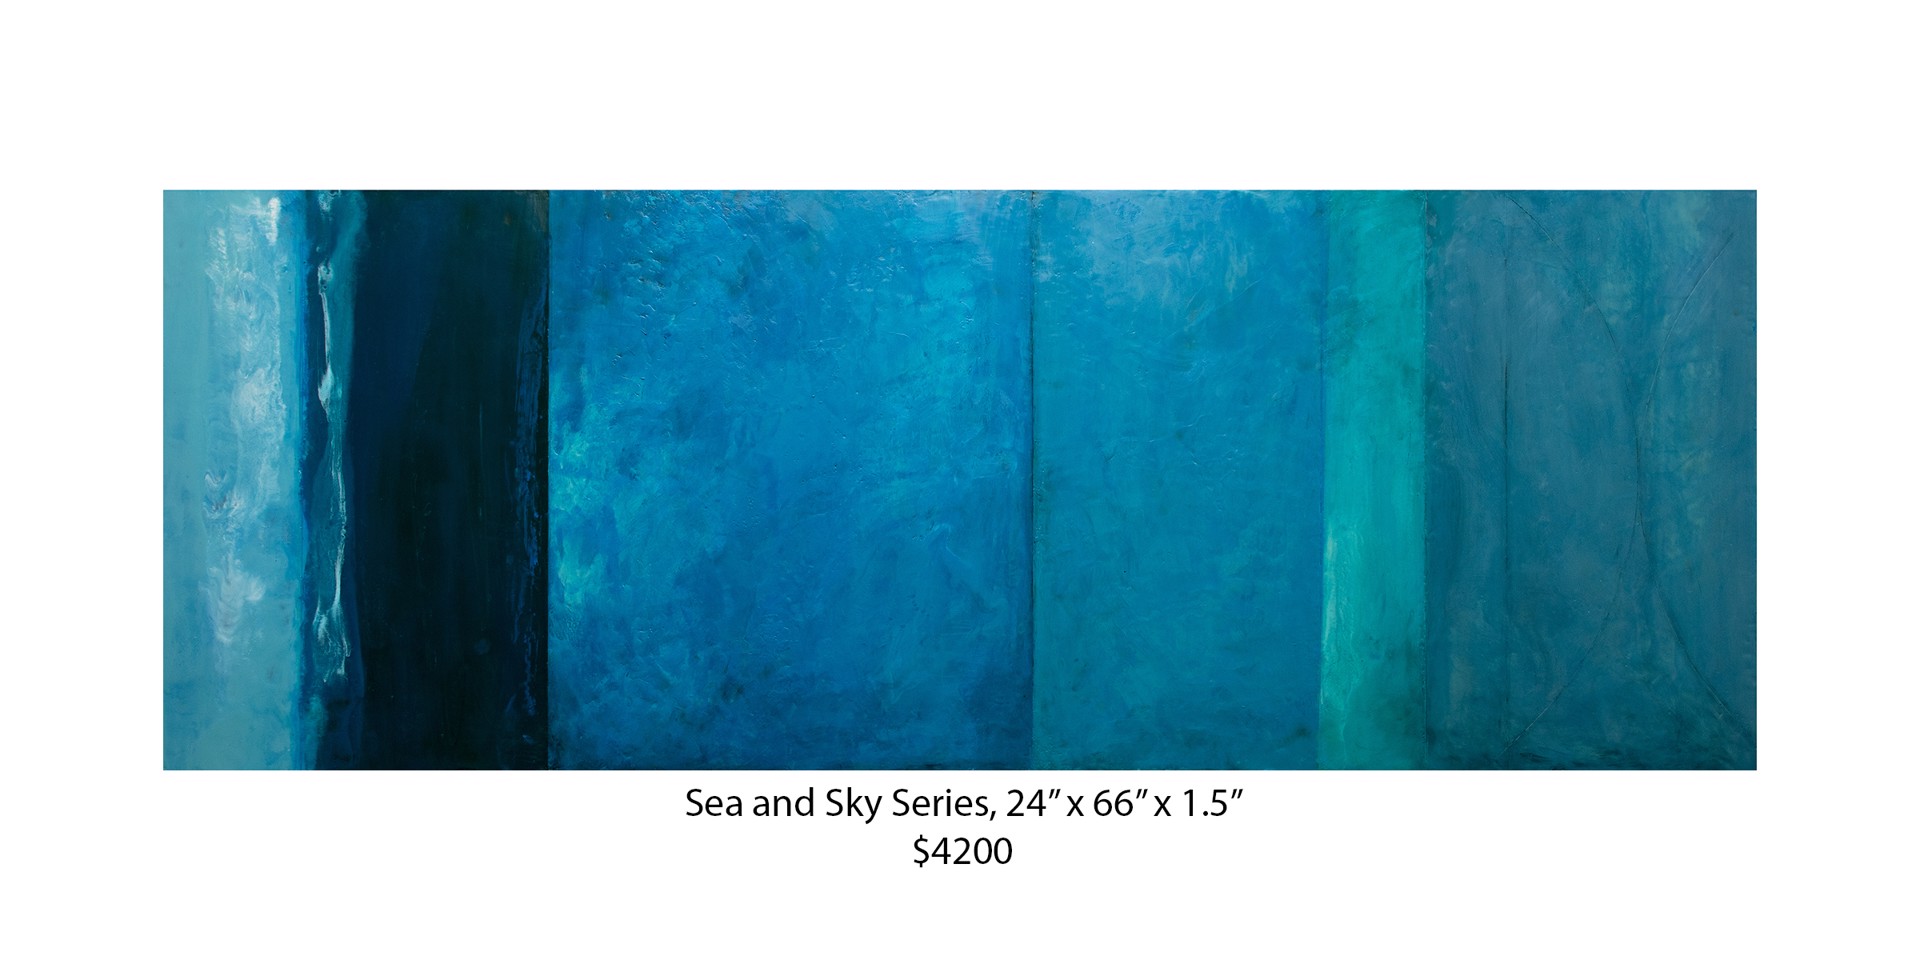 Sea and Sky Series by Graceann Warn